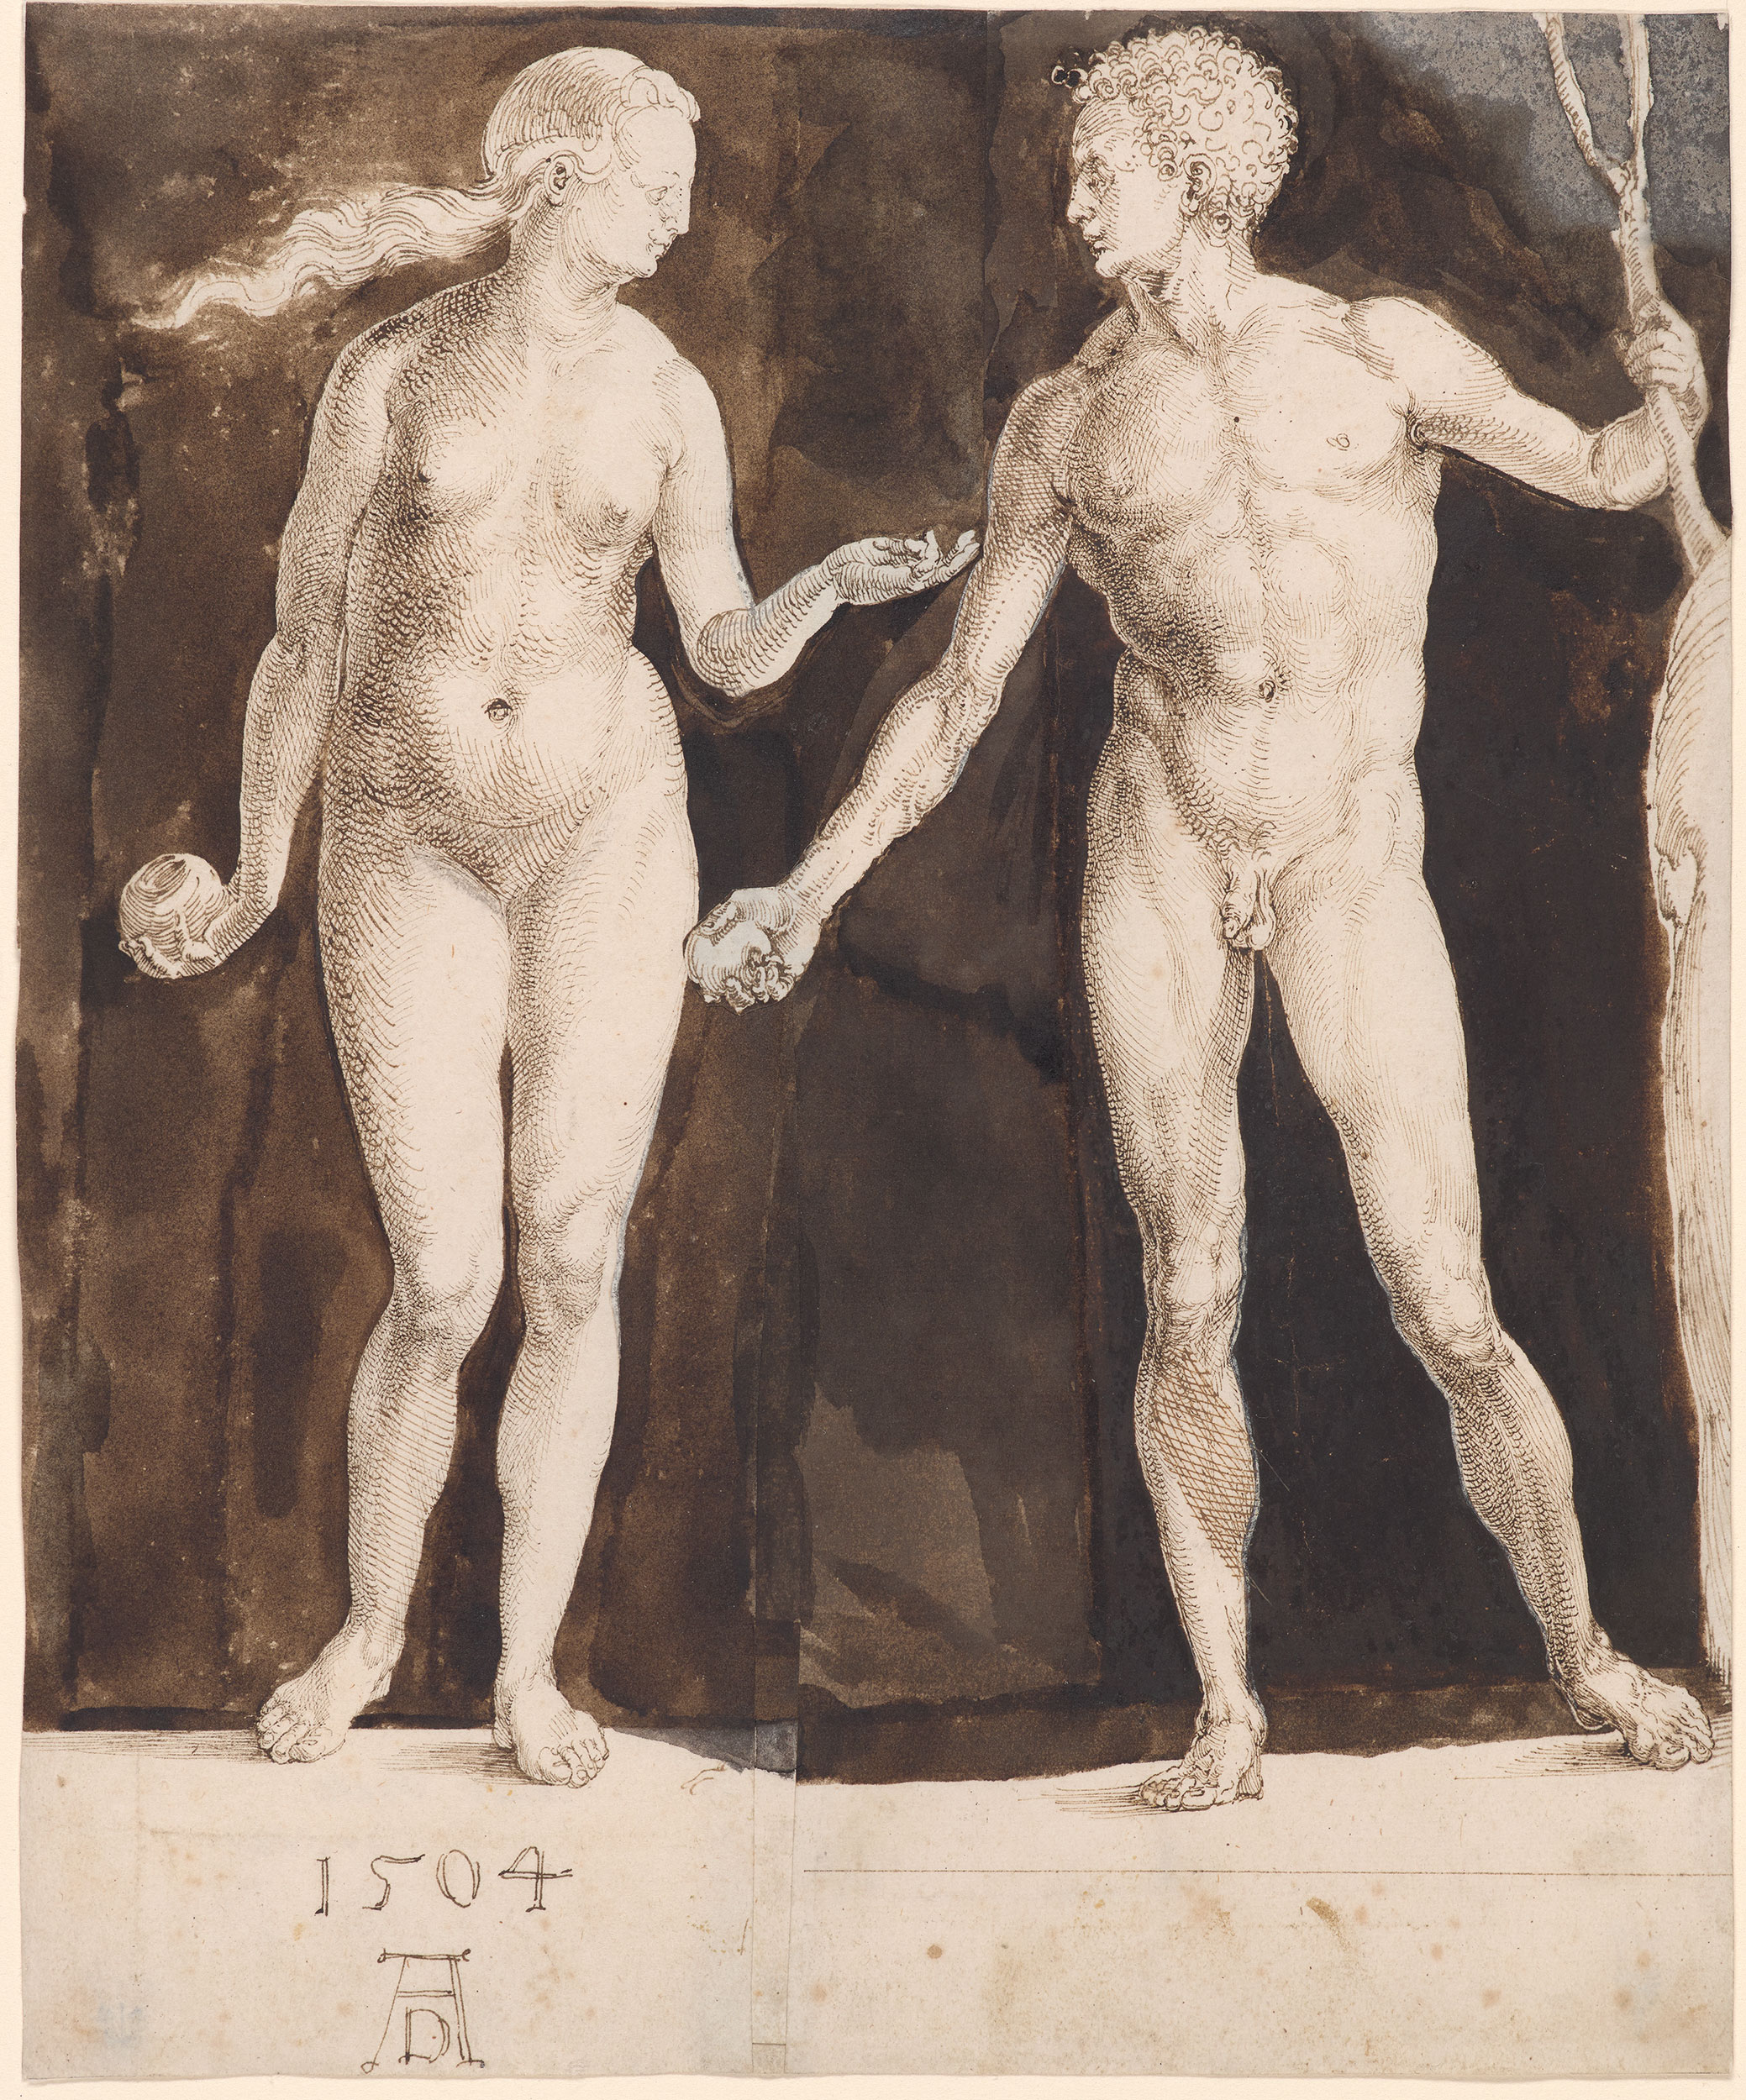 Adem ve Havva (orig. "Adam and Eve") by Albrecht Dürer - 1504 - 242 x 201 mm 